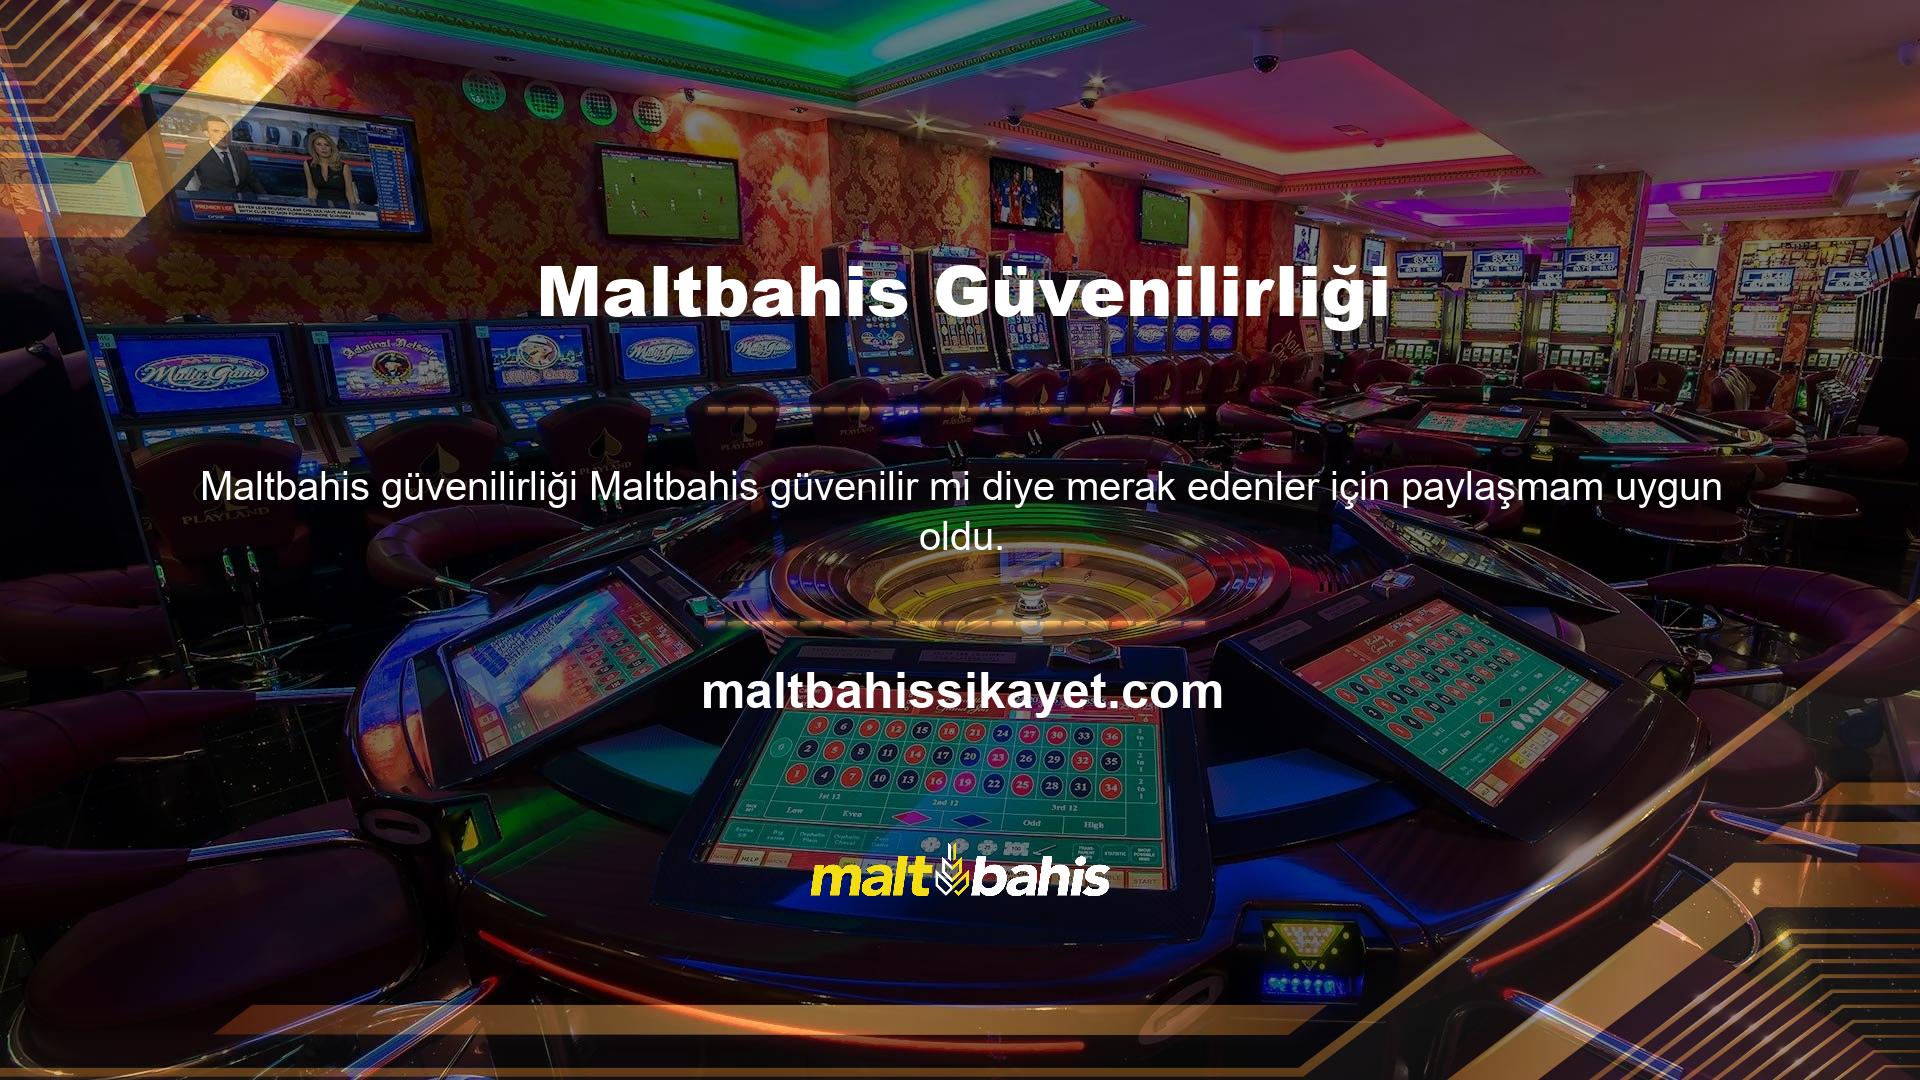 Yabancı çevrimiçi casino siteleri Türkiye'de büyük ilgi görüyor